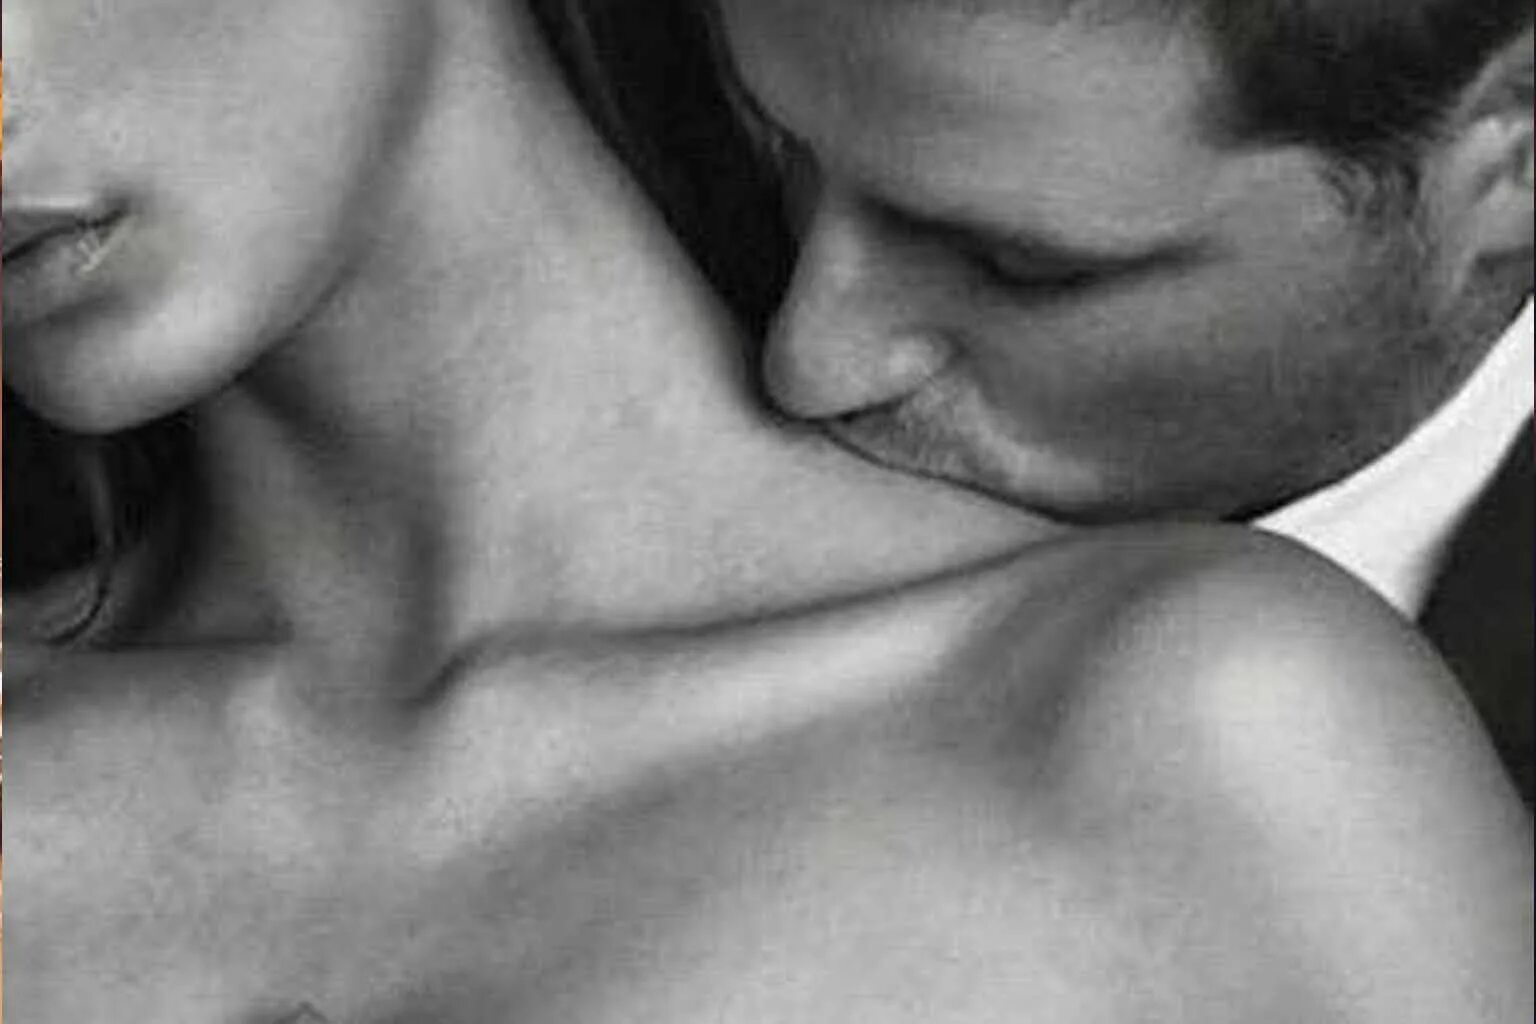 Поцелуй в шею. Поцелуй в плечо. Нежный поцелуй в шею. Нежный поцелуй в плечо. Мужчина страстно ласкает